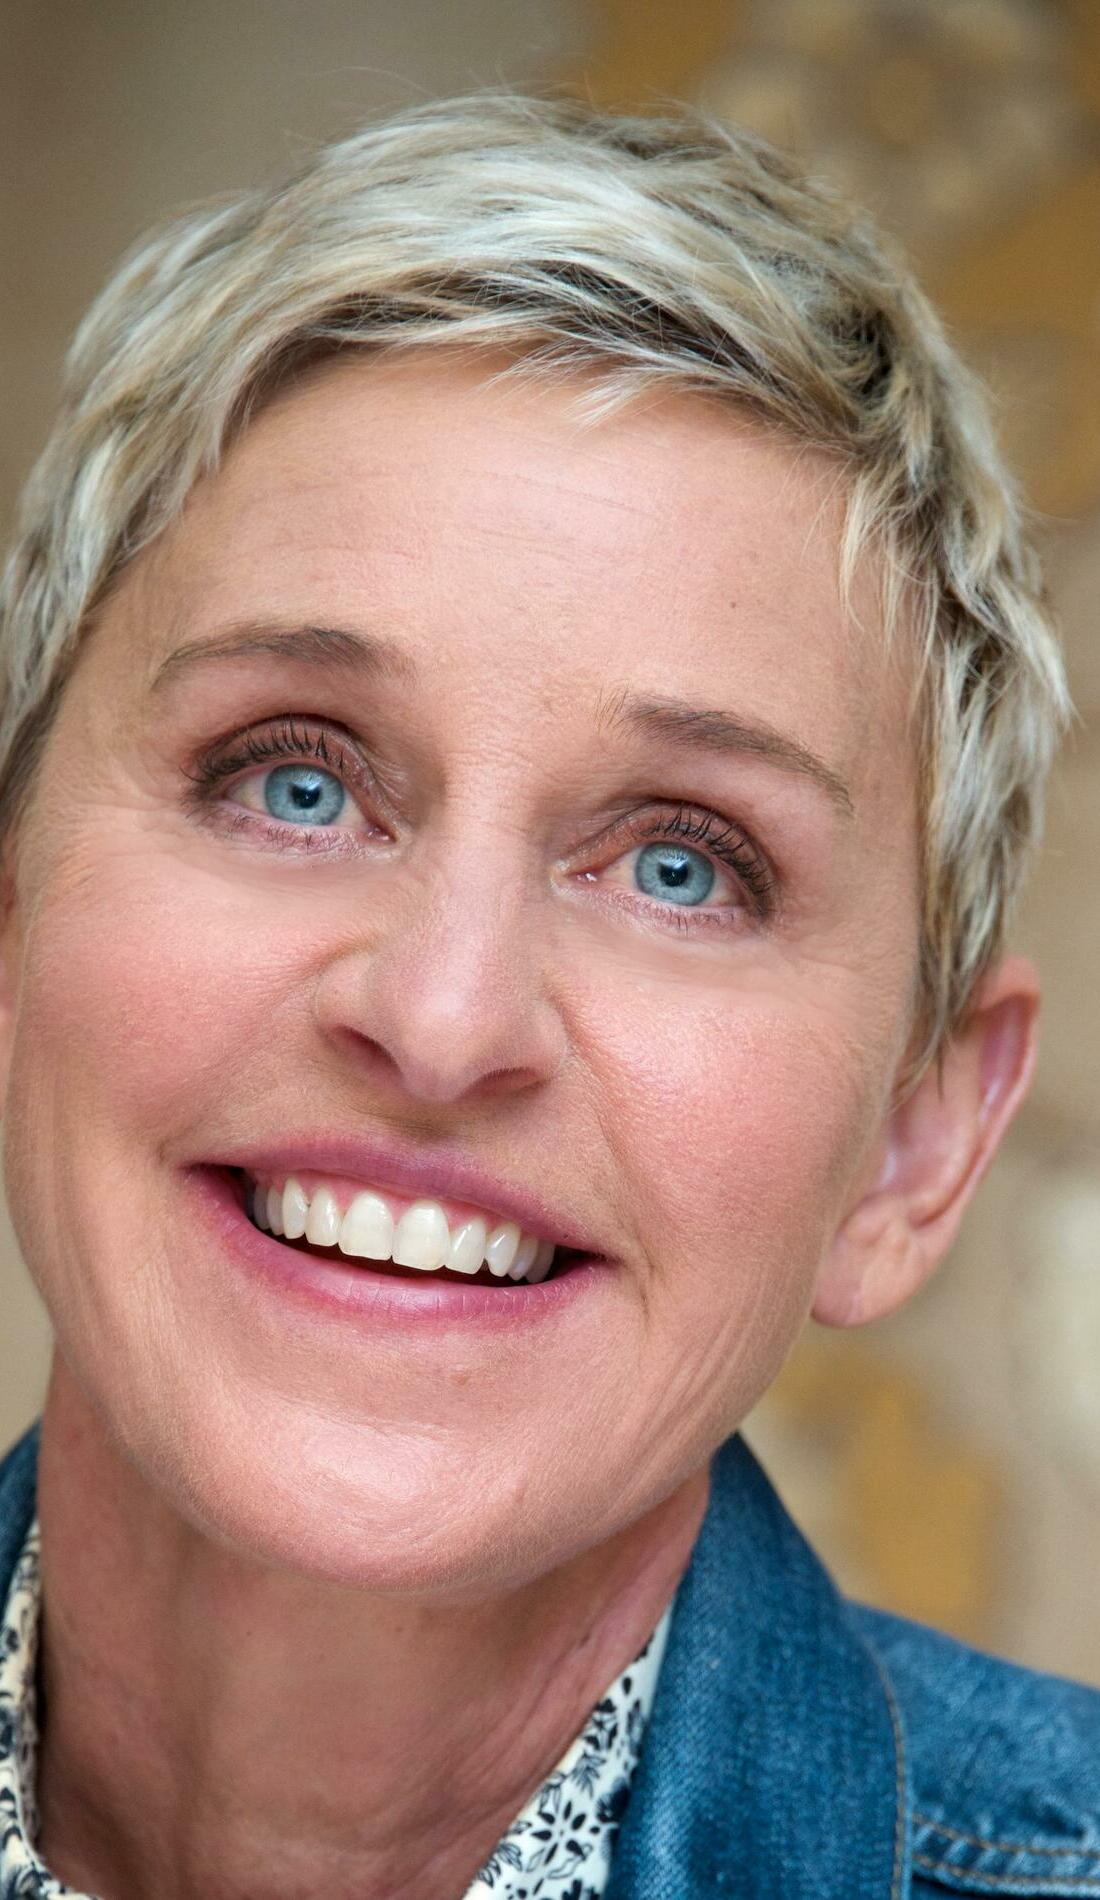 A Ellen DeGeneres live event